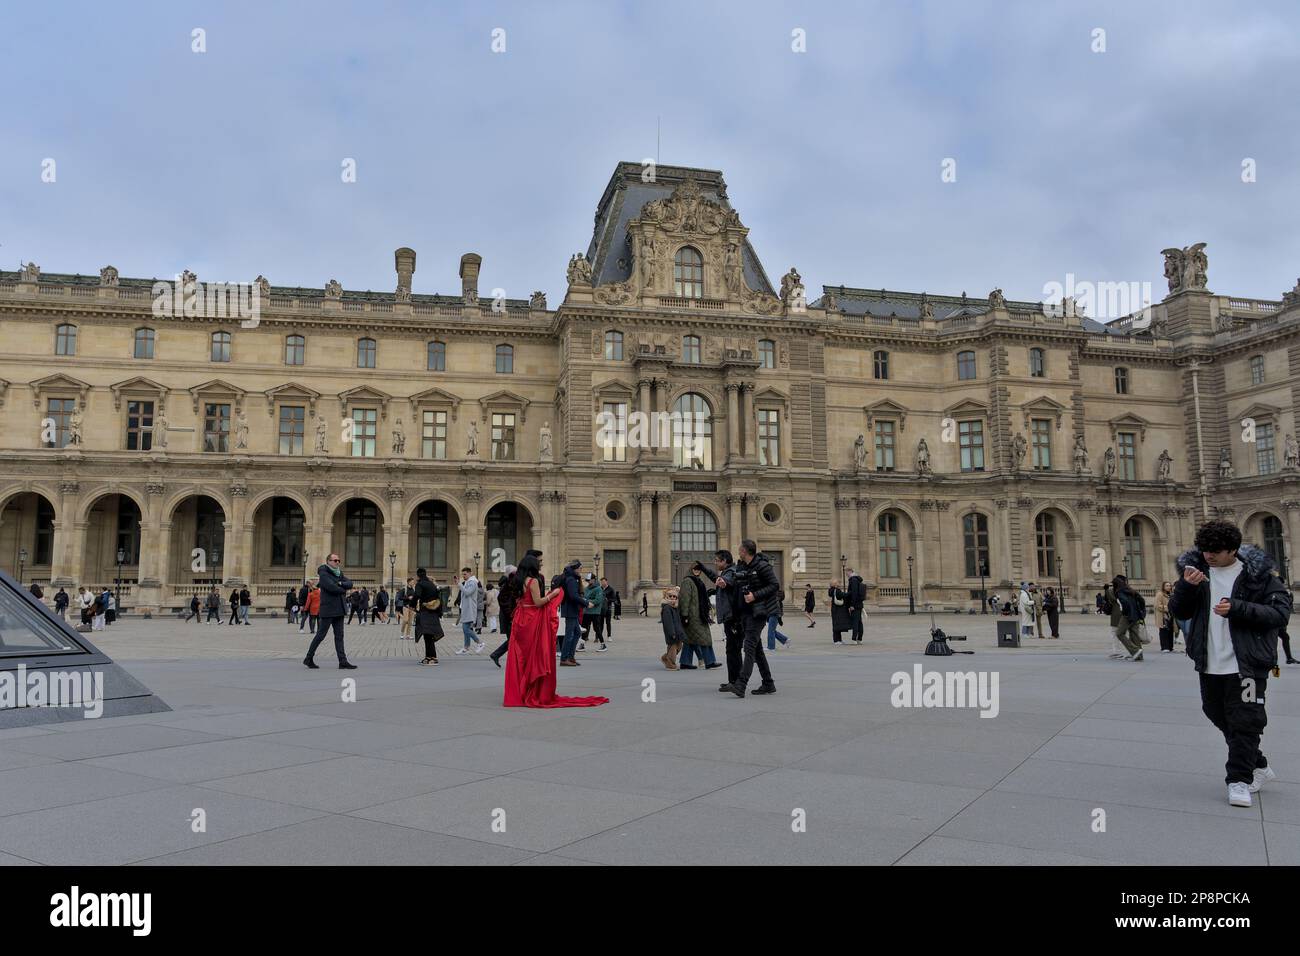 Ein Paar in Rot, das vor dem Louvre fotografiert wird, mit Touristen in der Nähe Stockfoto